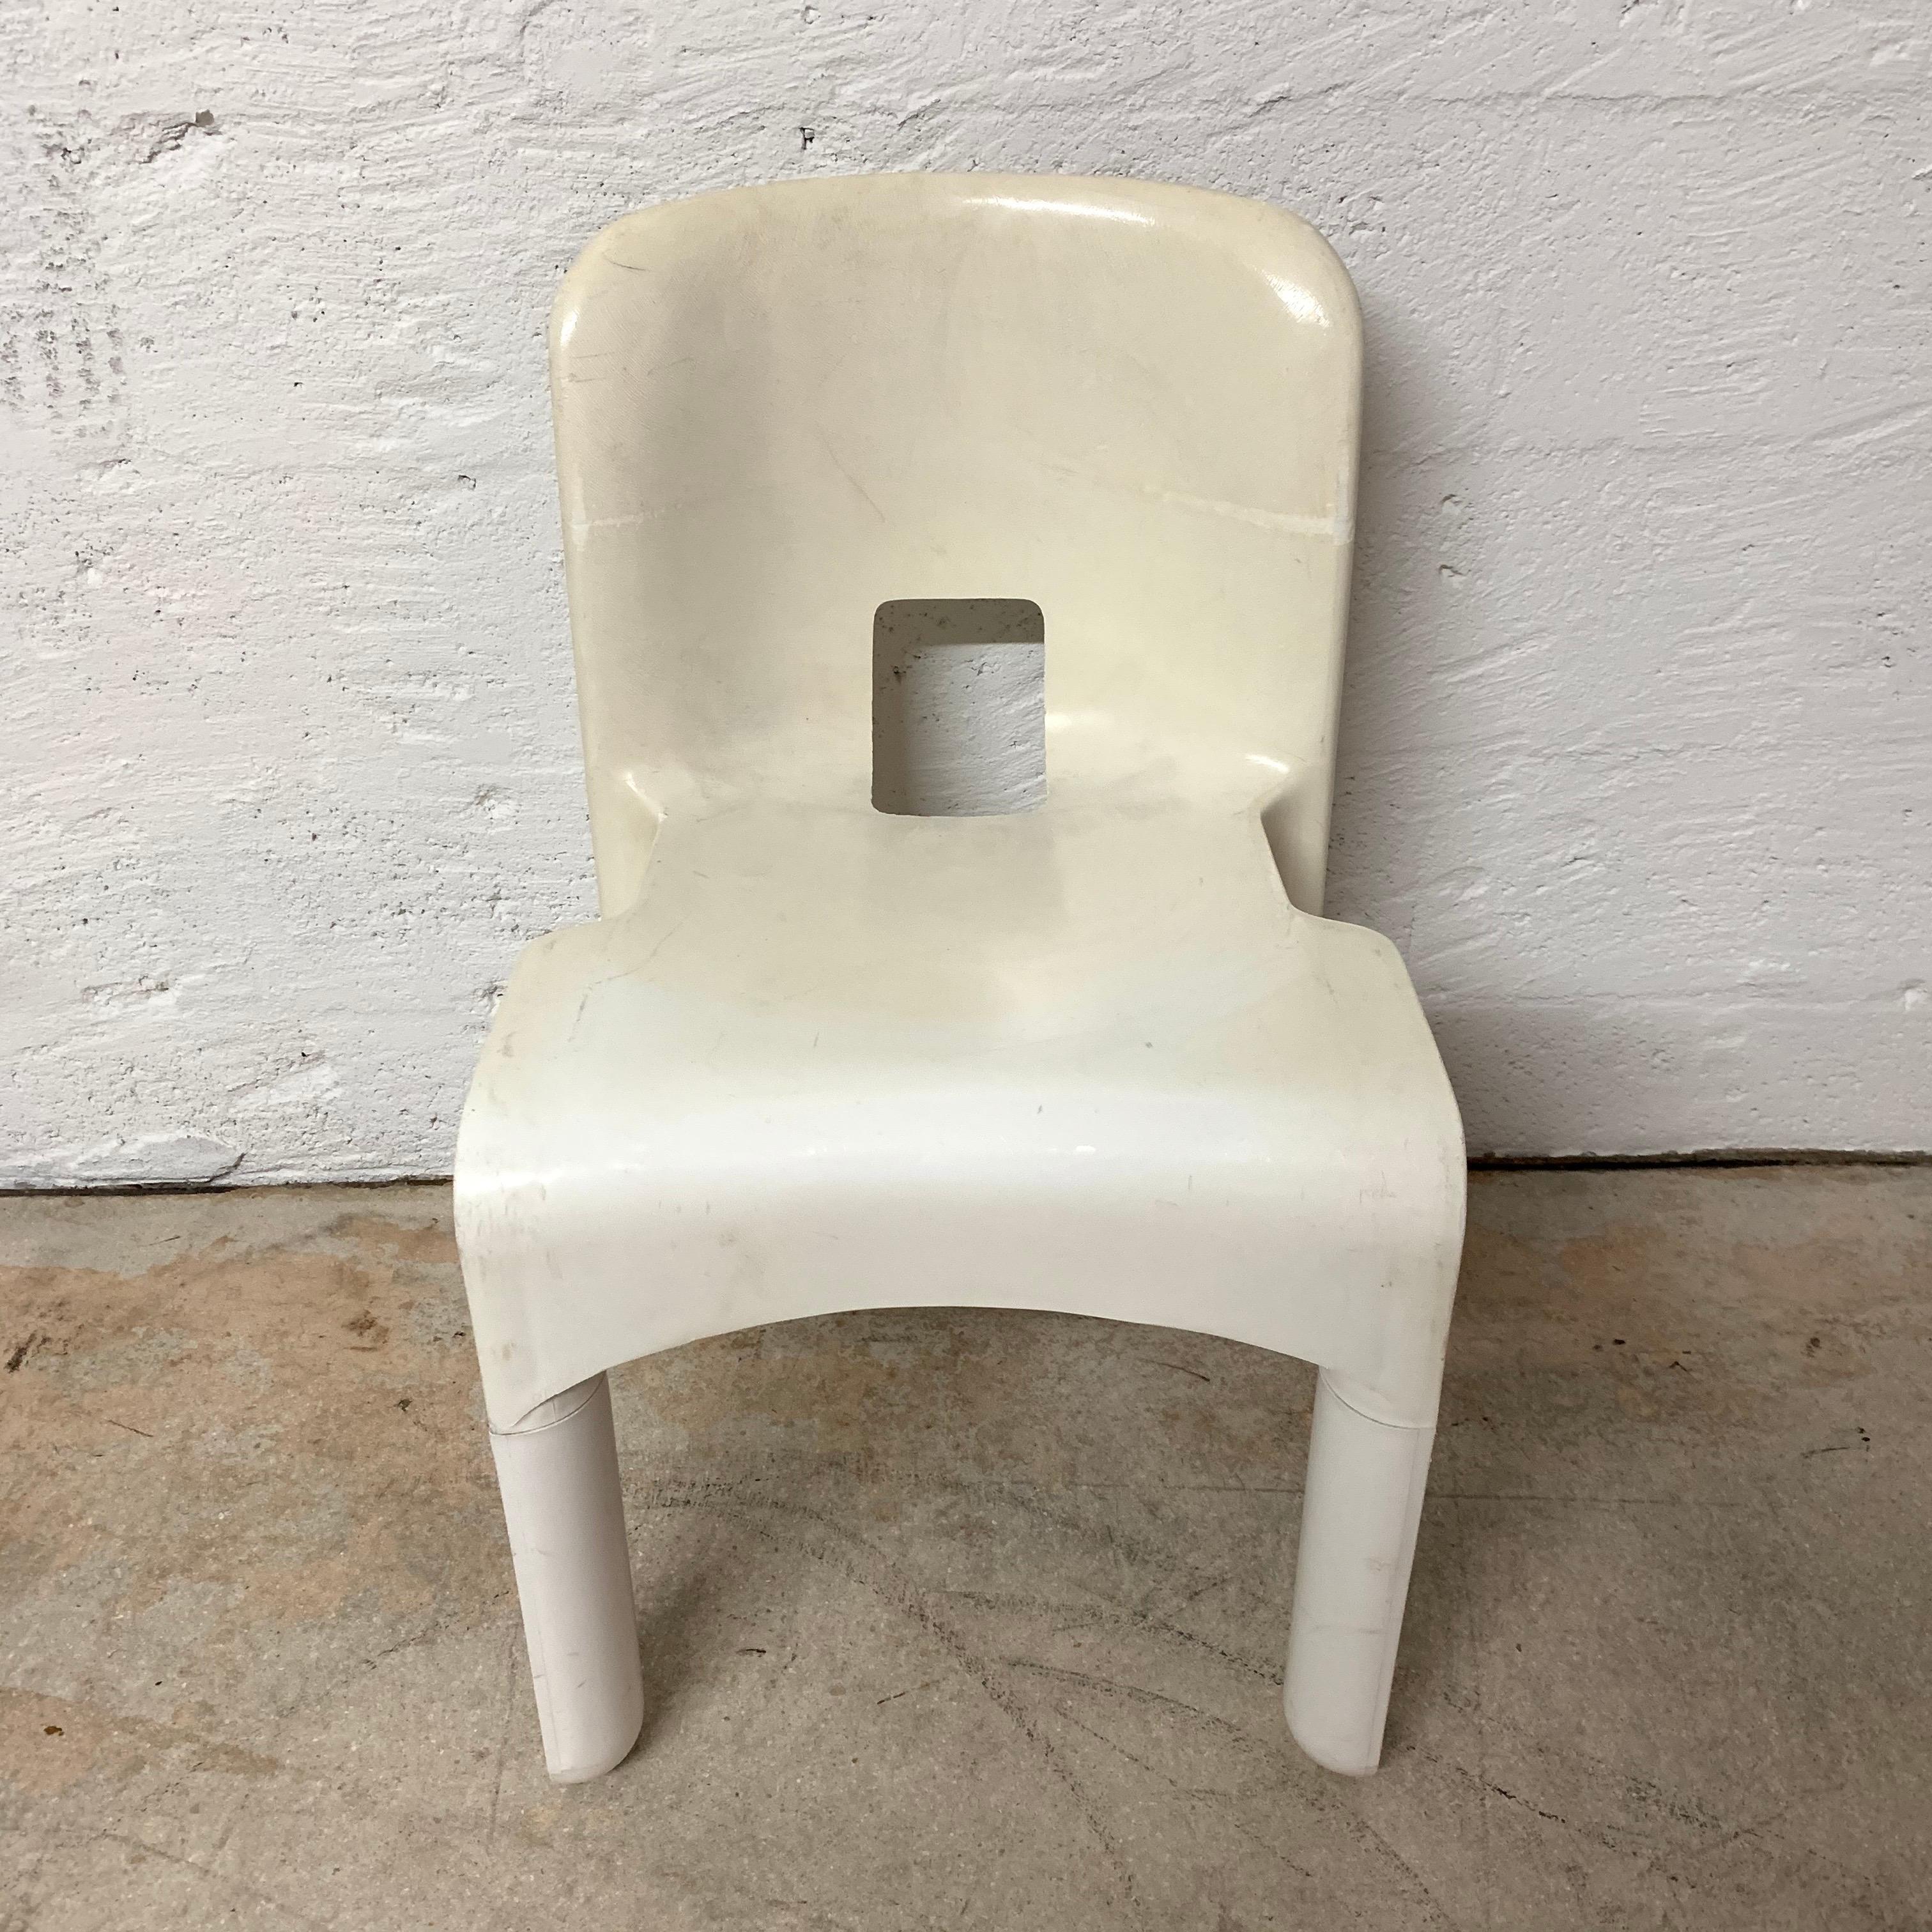 Chaise Universale originale rendue en polycarbonate, conçue par Joe Colombo pour Kartell, Italie, et fabriquée par Beylerian LTD, années 1960.